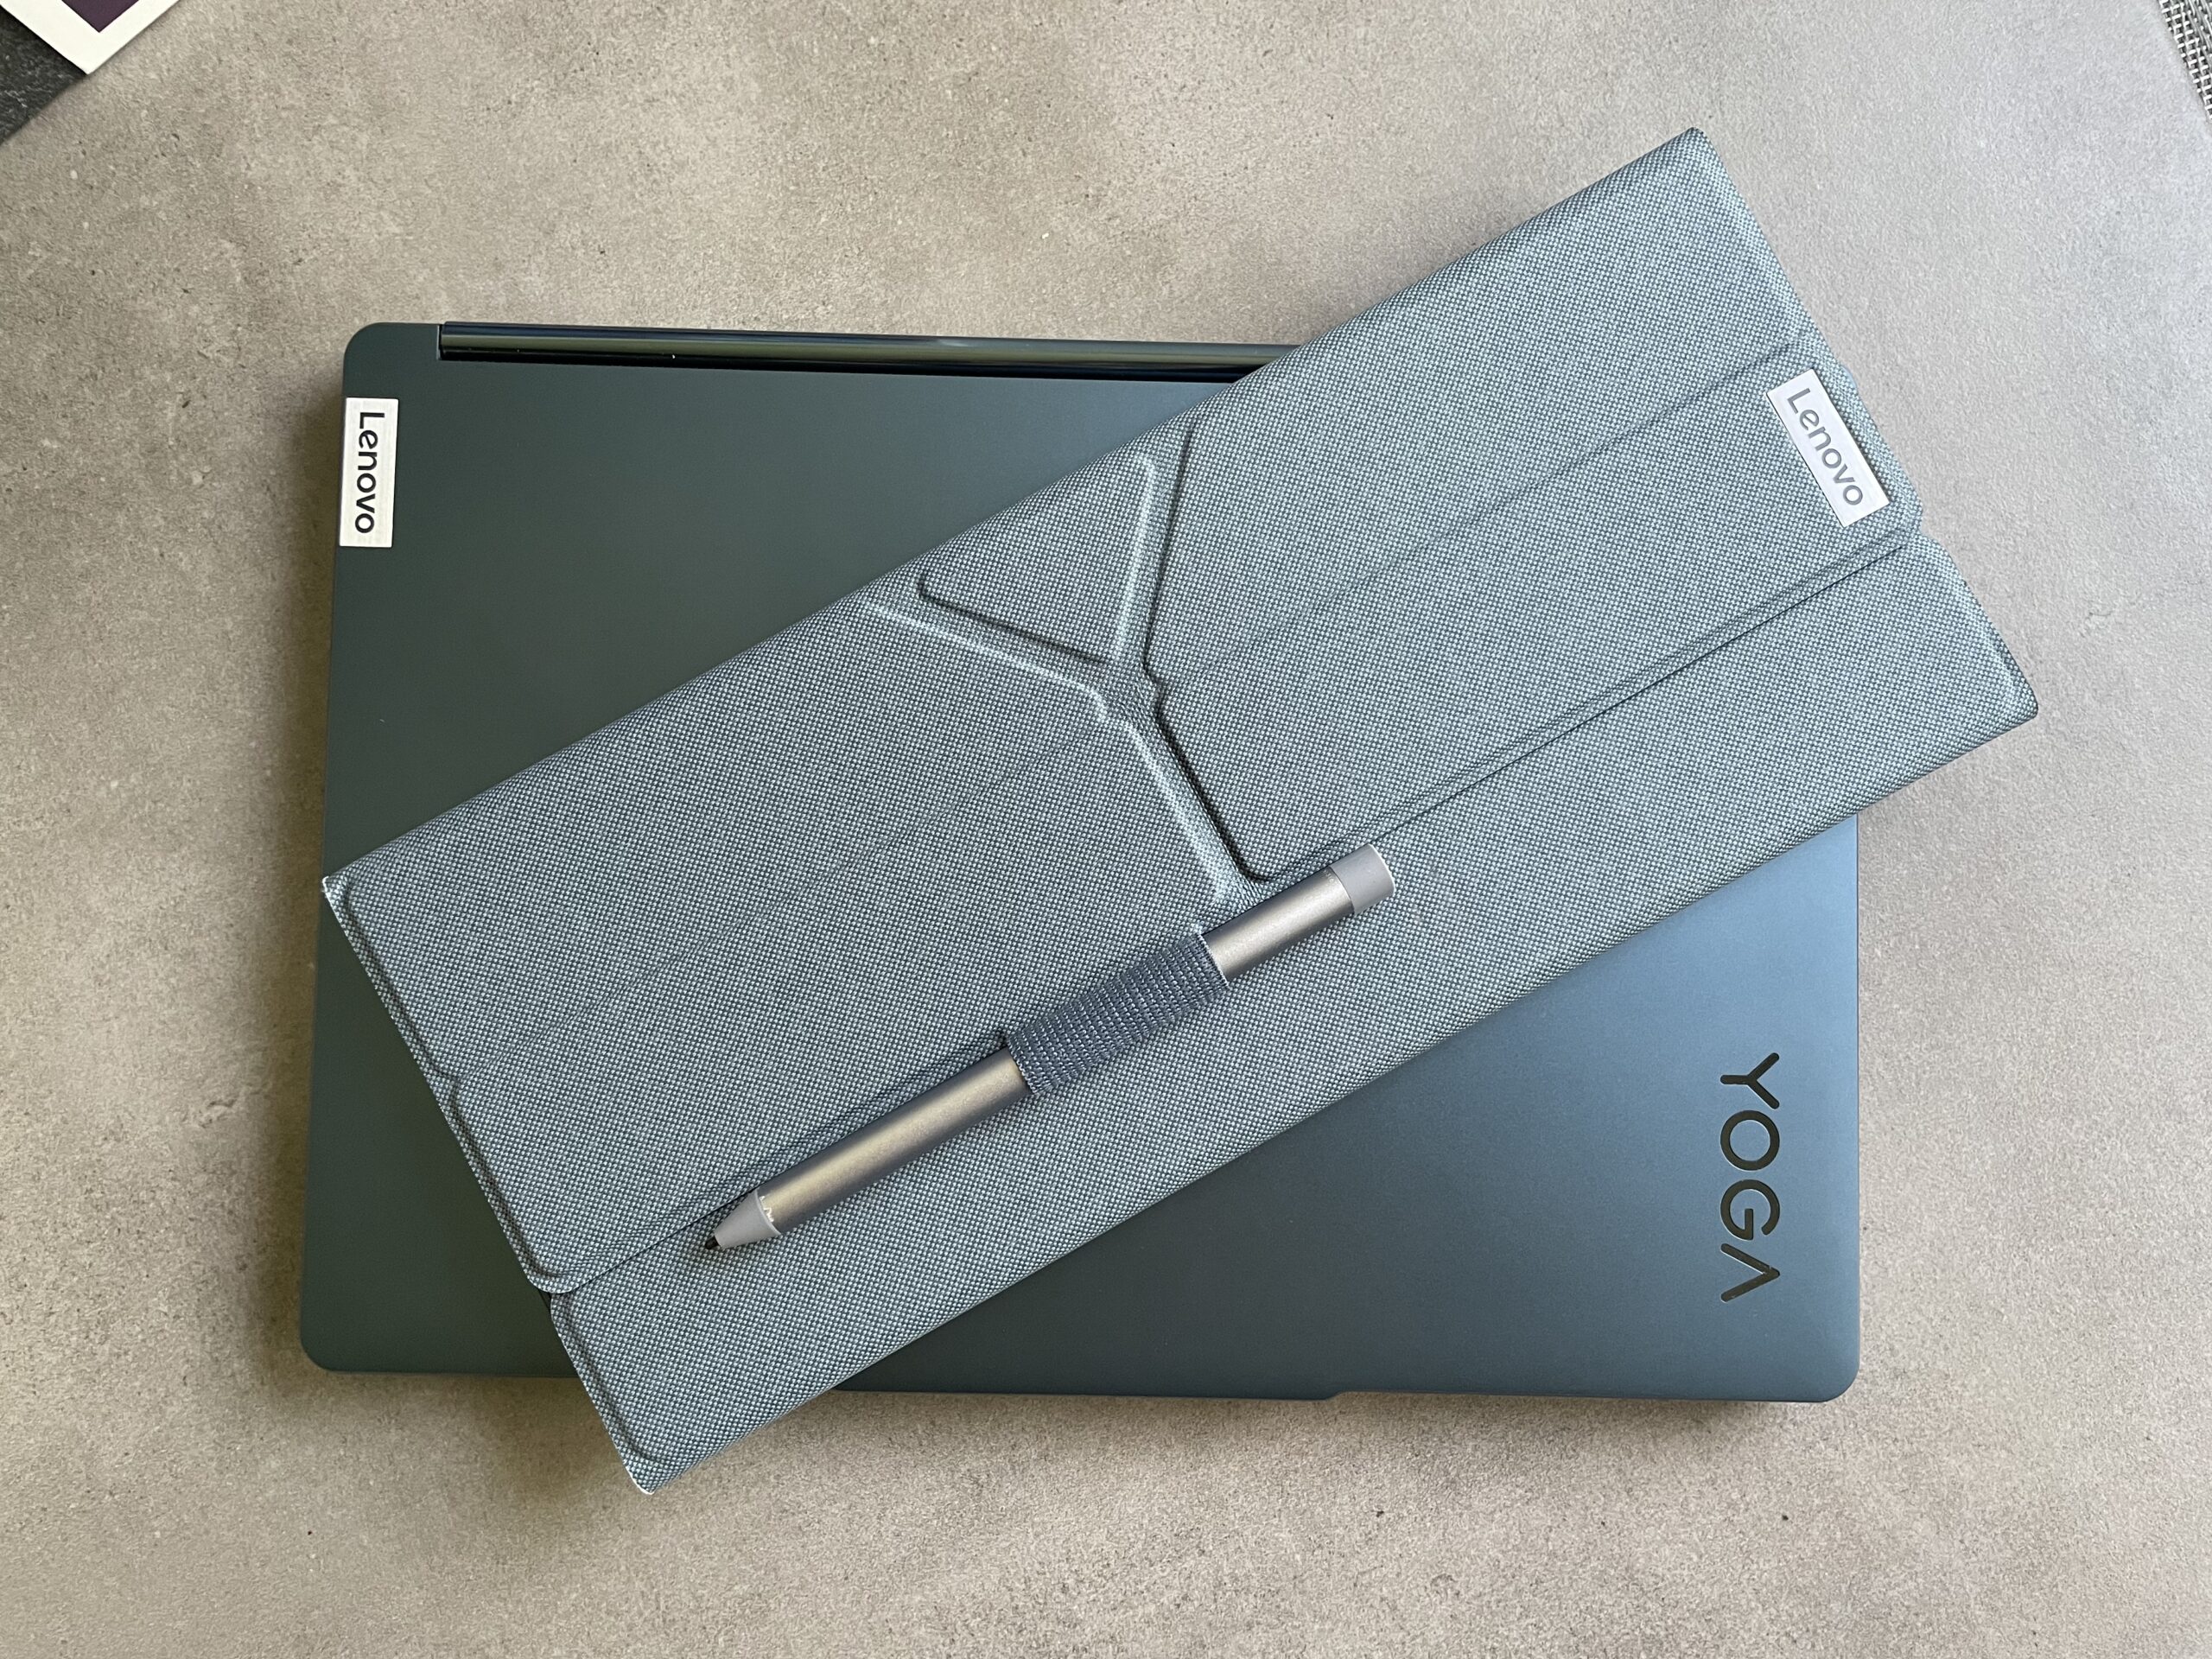 Laptop Lenovo Yoga w niebieskiej obudowie z etui w kolorze szarym i rysikiem na nim położonym.